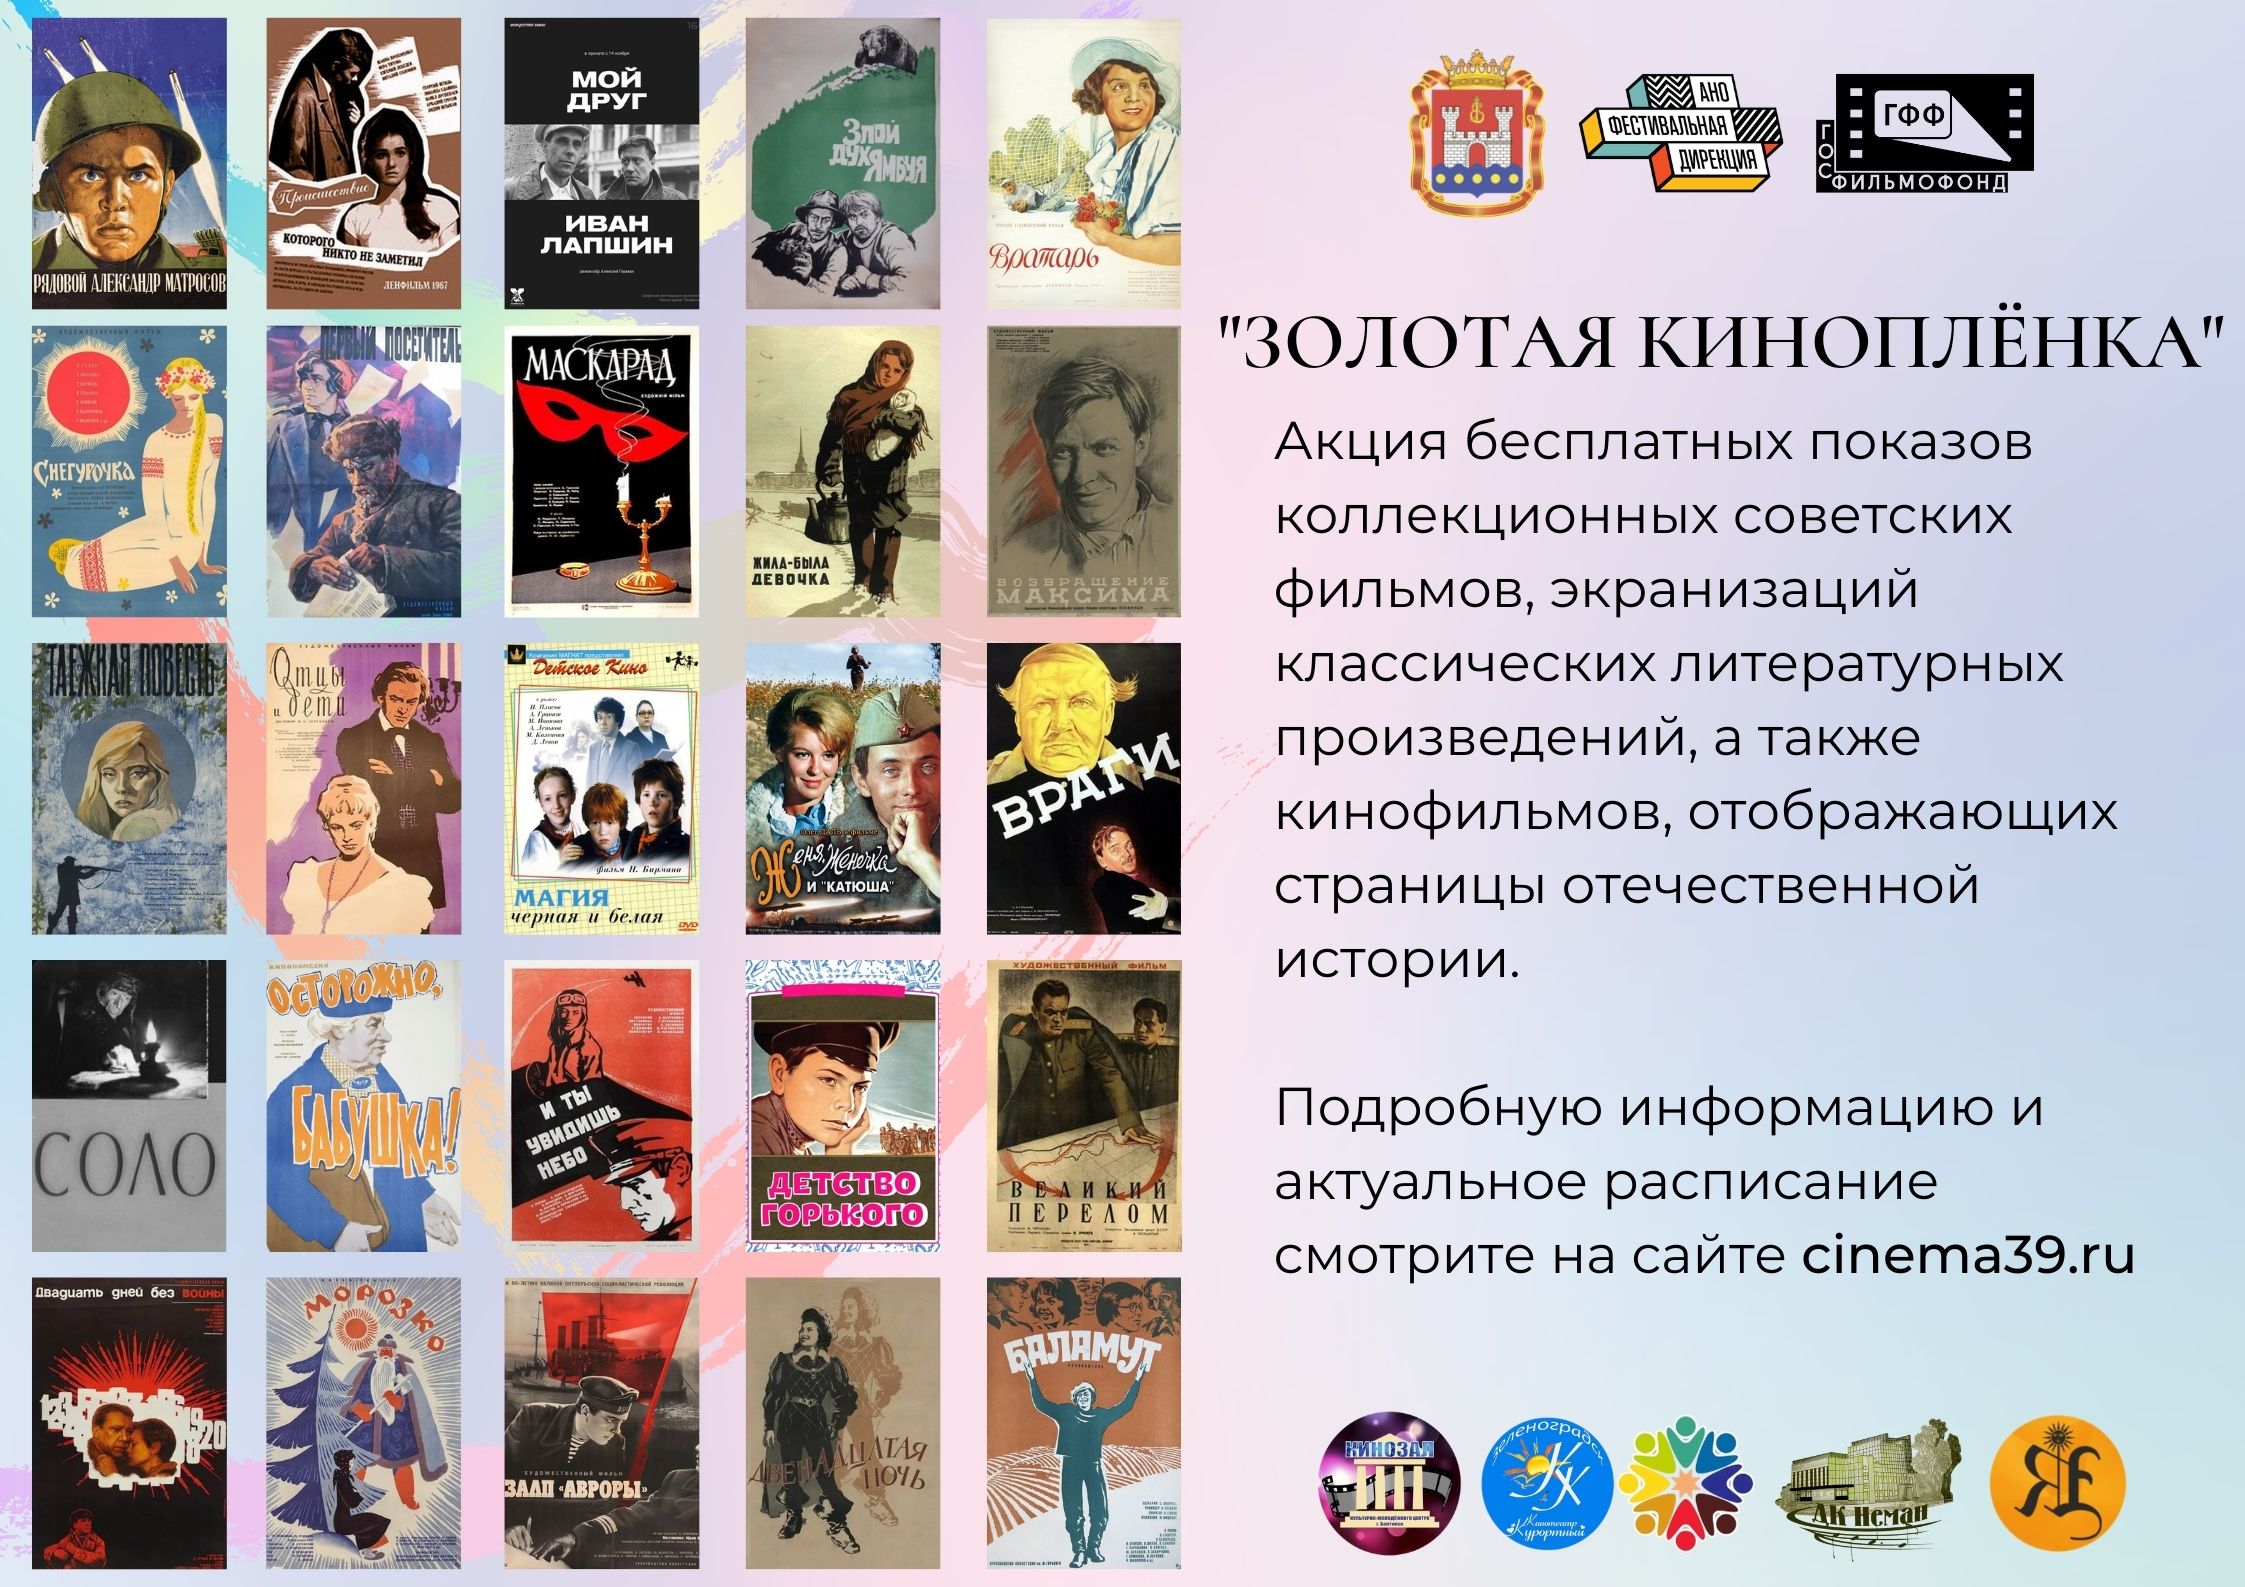 «Золотая киноплёнка»: в Калининградской области пройдут бесплатные кинопоказы советских фильмов